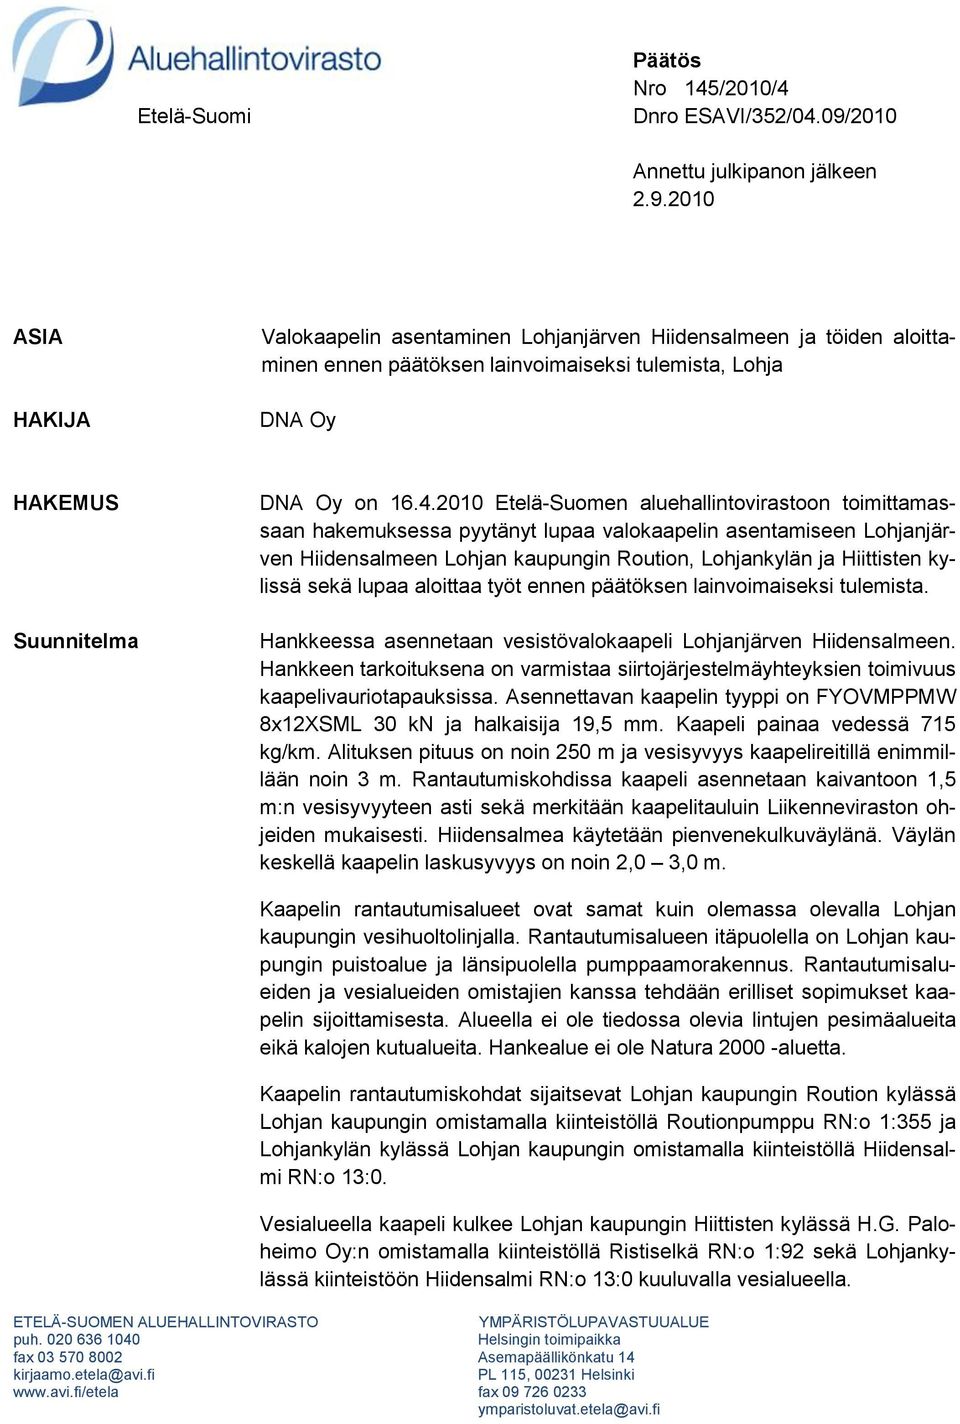 2010 ASIA HAKIJA Valokaapelin asentaminen Lohjanjärven Hiidensalmeen ja töiden aloittaminen ennen päätöksen lainvoimaiseksi tulemista, Lohja DNA Oy HAKEMUS Suunnitelma DNA Oy on 16.4.